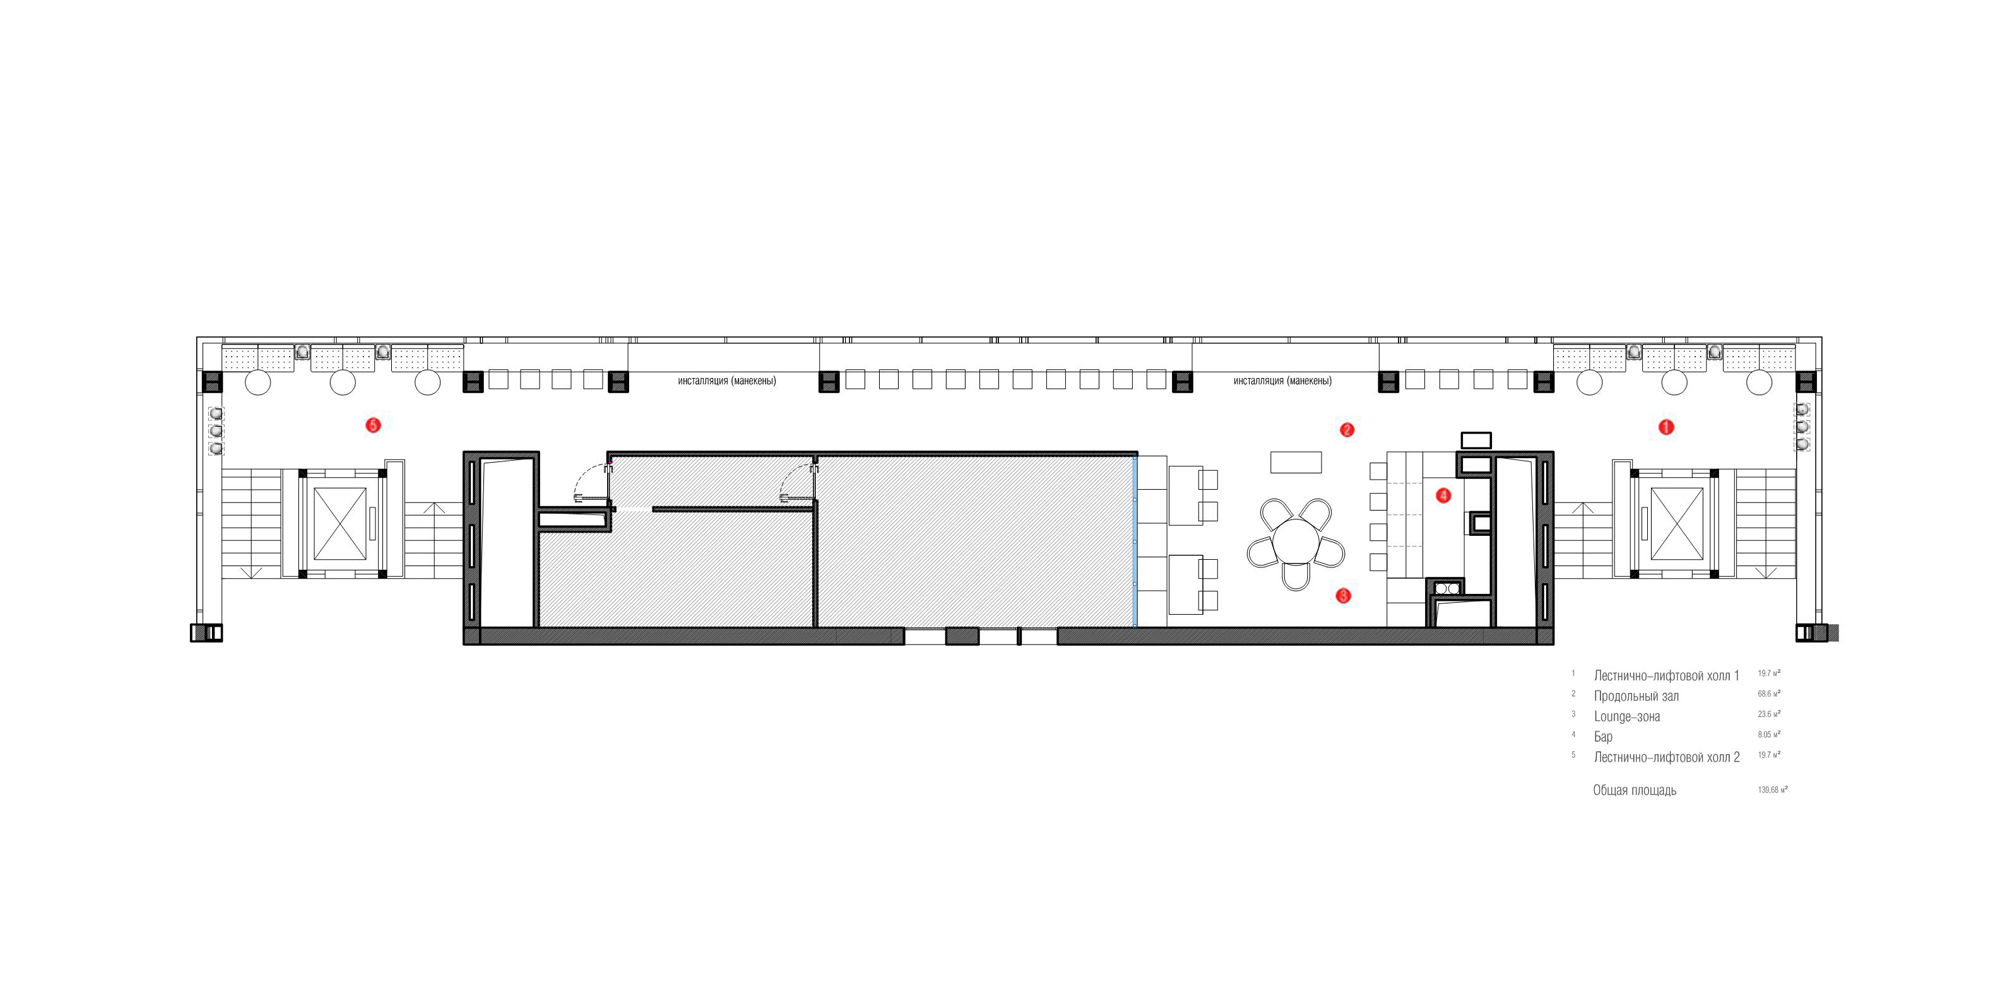 Документация дизайна, План помещений, План помещения - Кафе «Holywood», Автор проекта: Архитекторы ART Studio Design Construction 